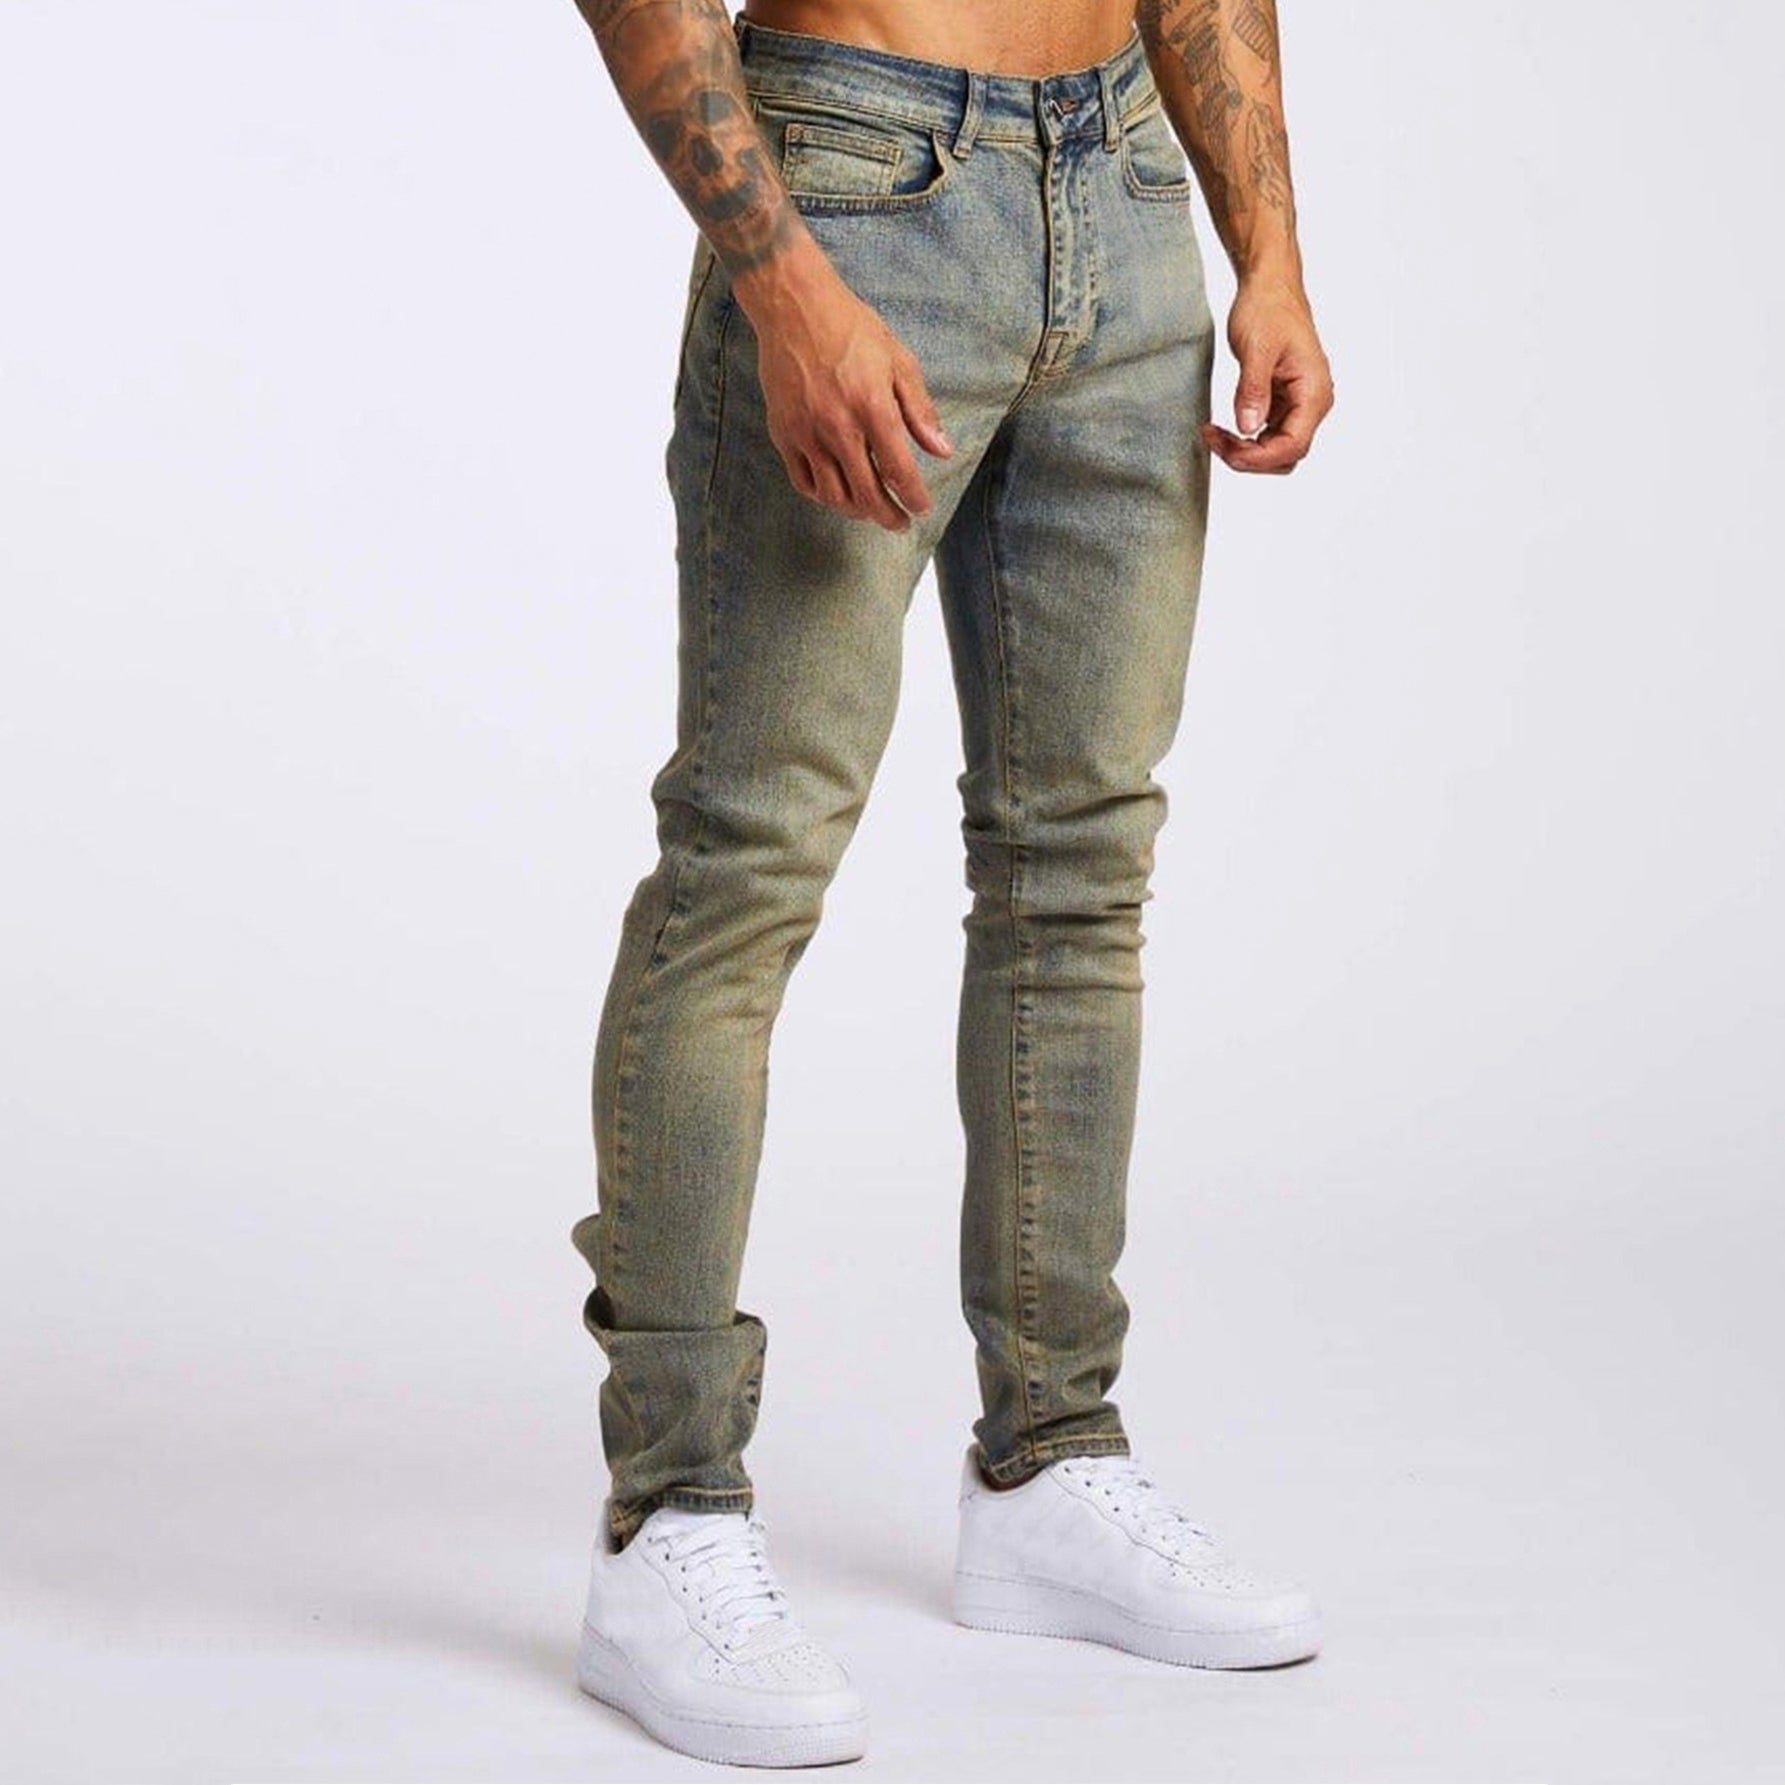 Jack Washington Determined Style Jeans